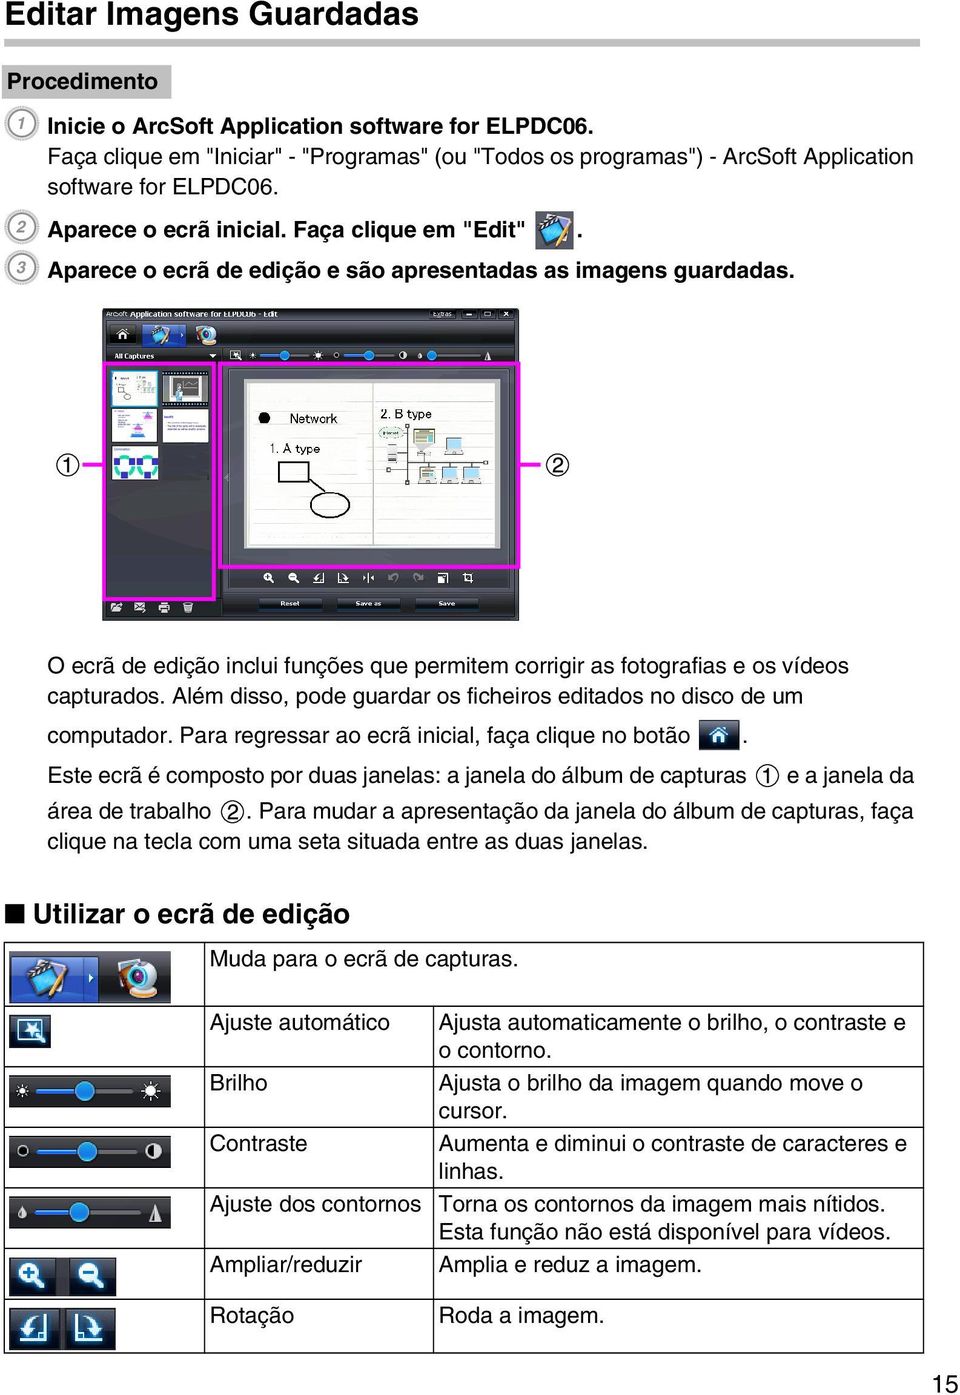 O ecrã de edição inclui funções que permitem corrigir as fotografias e os vídeos capturados. Além disso, pode guardar os ficheiros editados no disco de um computador.